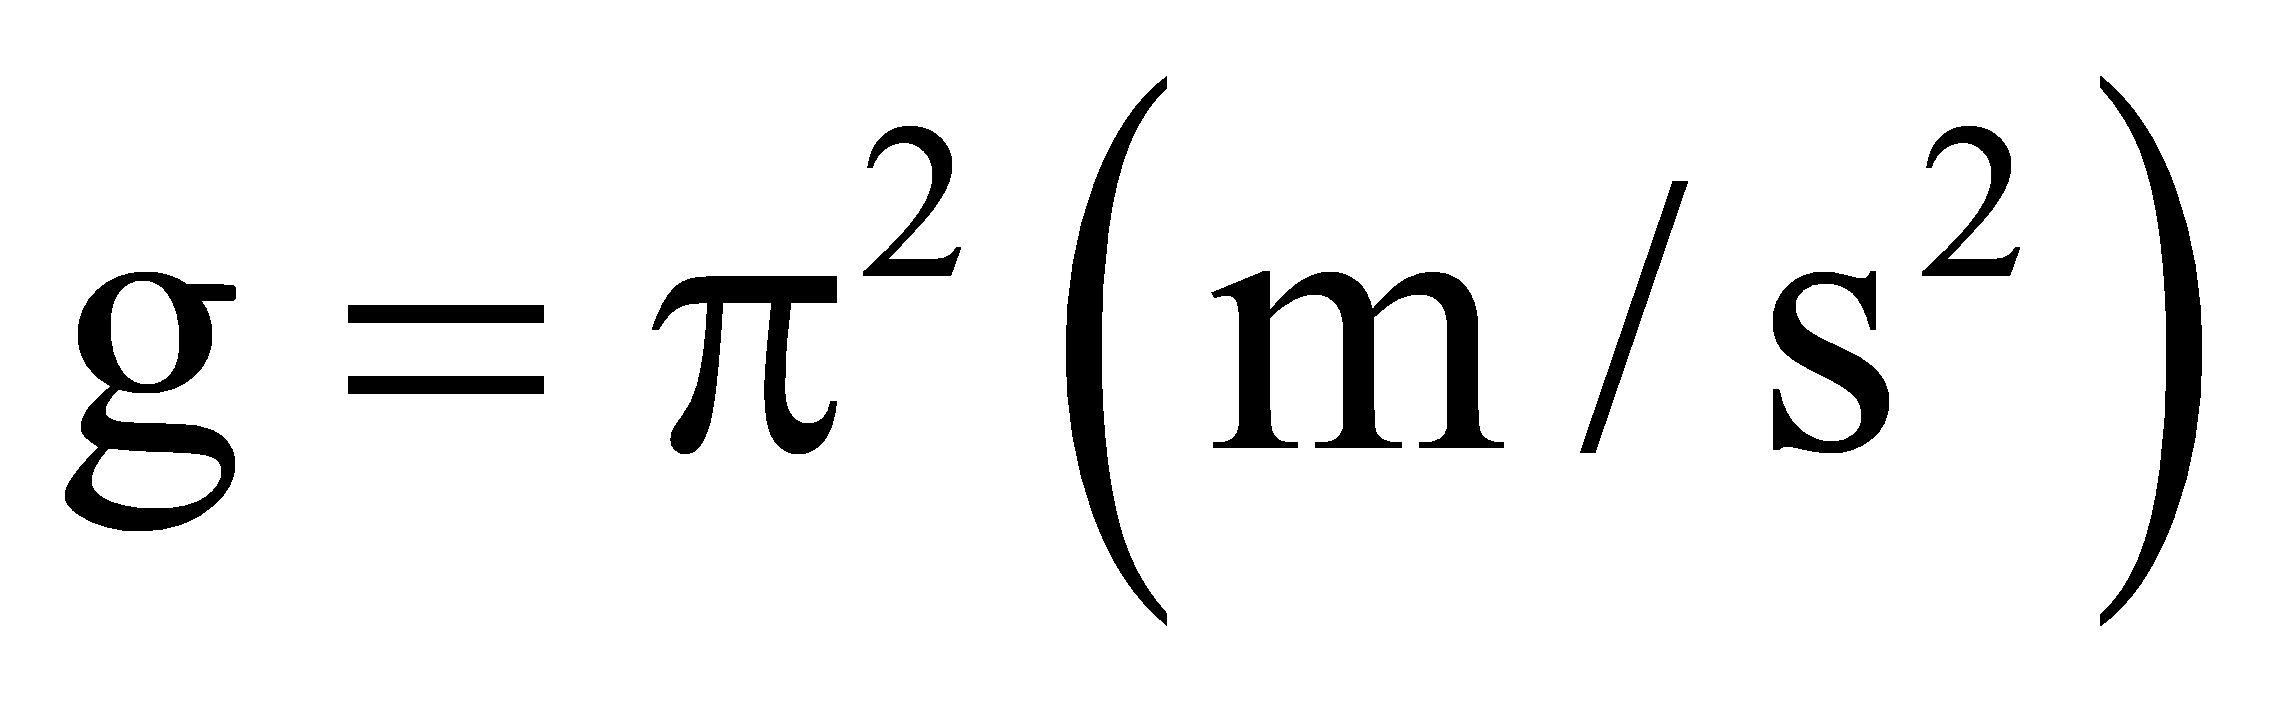 Tìm giá trị thực của tham số m để pt (m-2)